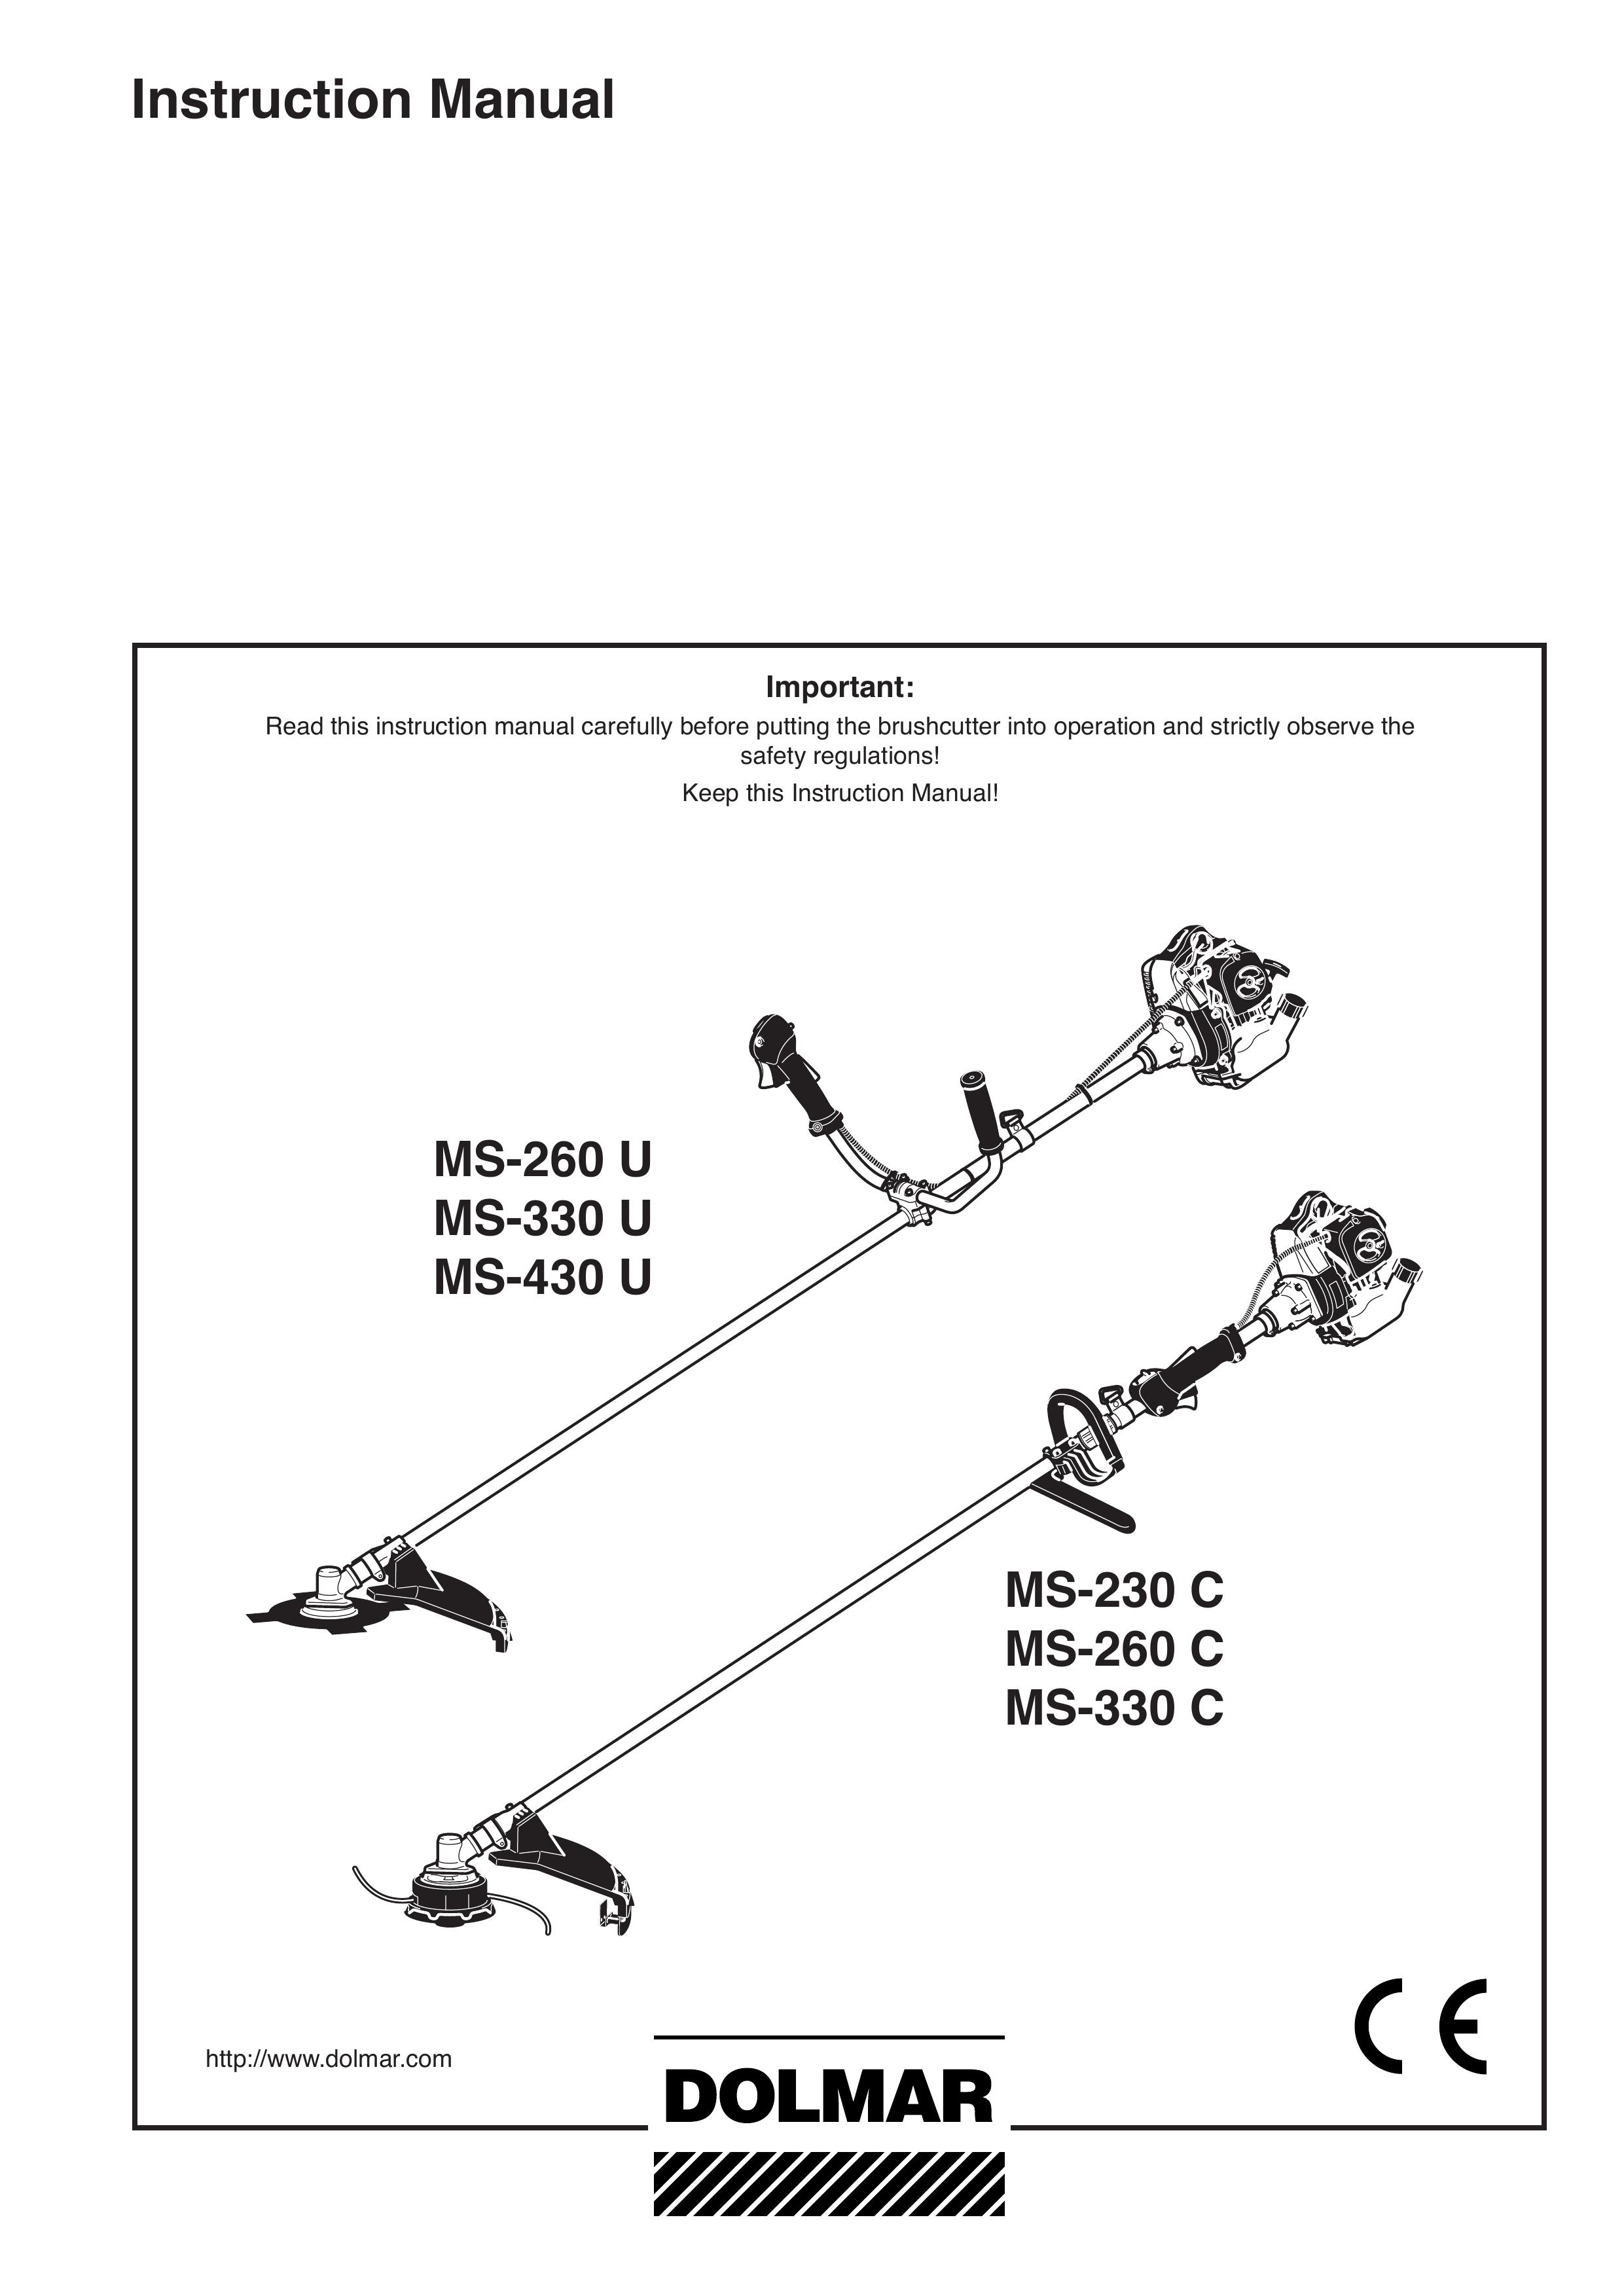 Dolmar MS-260 U, MS-330 U, MS-430 U, MS-230 C, MS-260 C, MS-330 C Brush Cutter User Manual